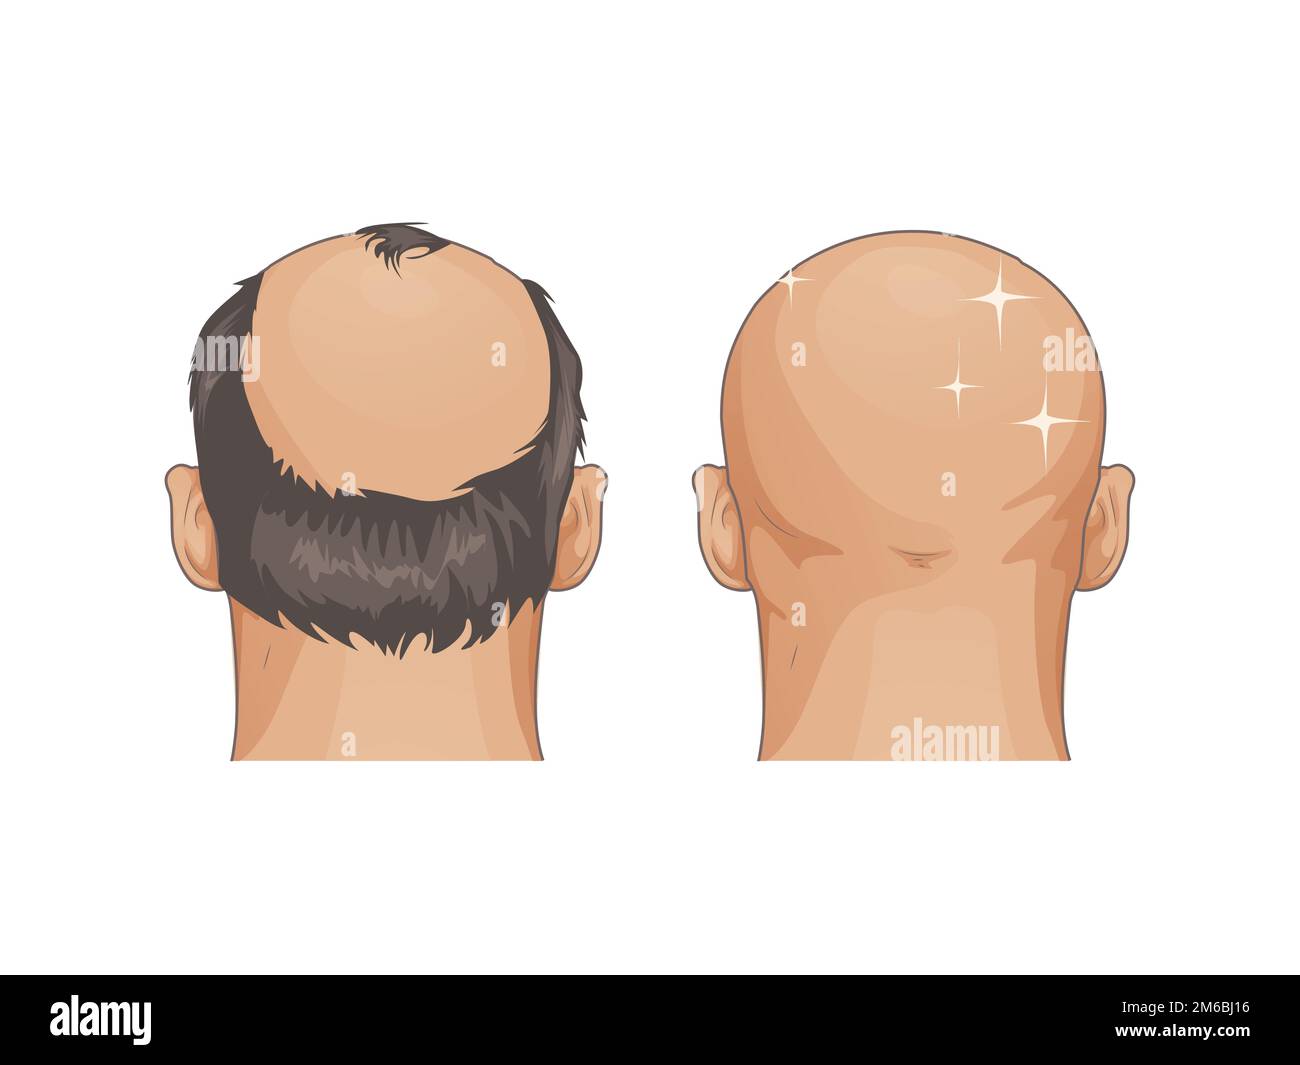 Mann mit Haarausfall Problem isoliert auf weißem Hintergrund, Zeichentrickstil auf weiß Stock Vektor